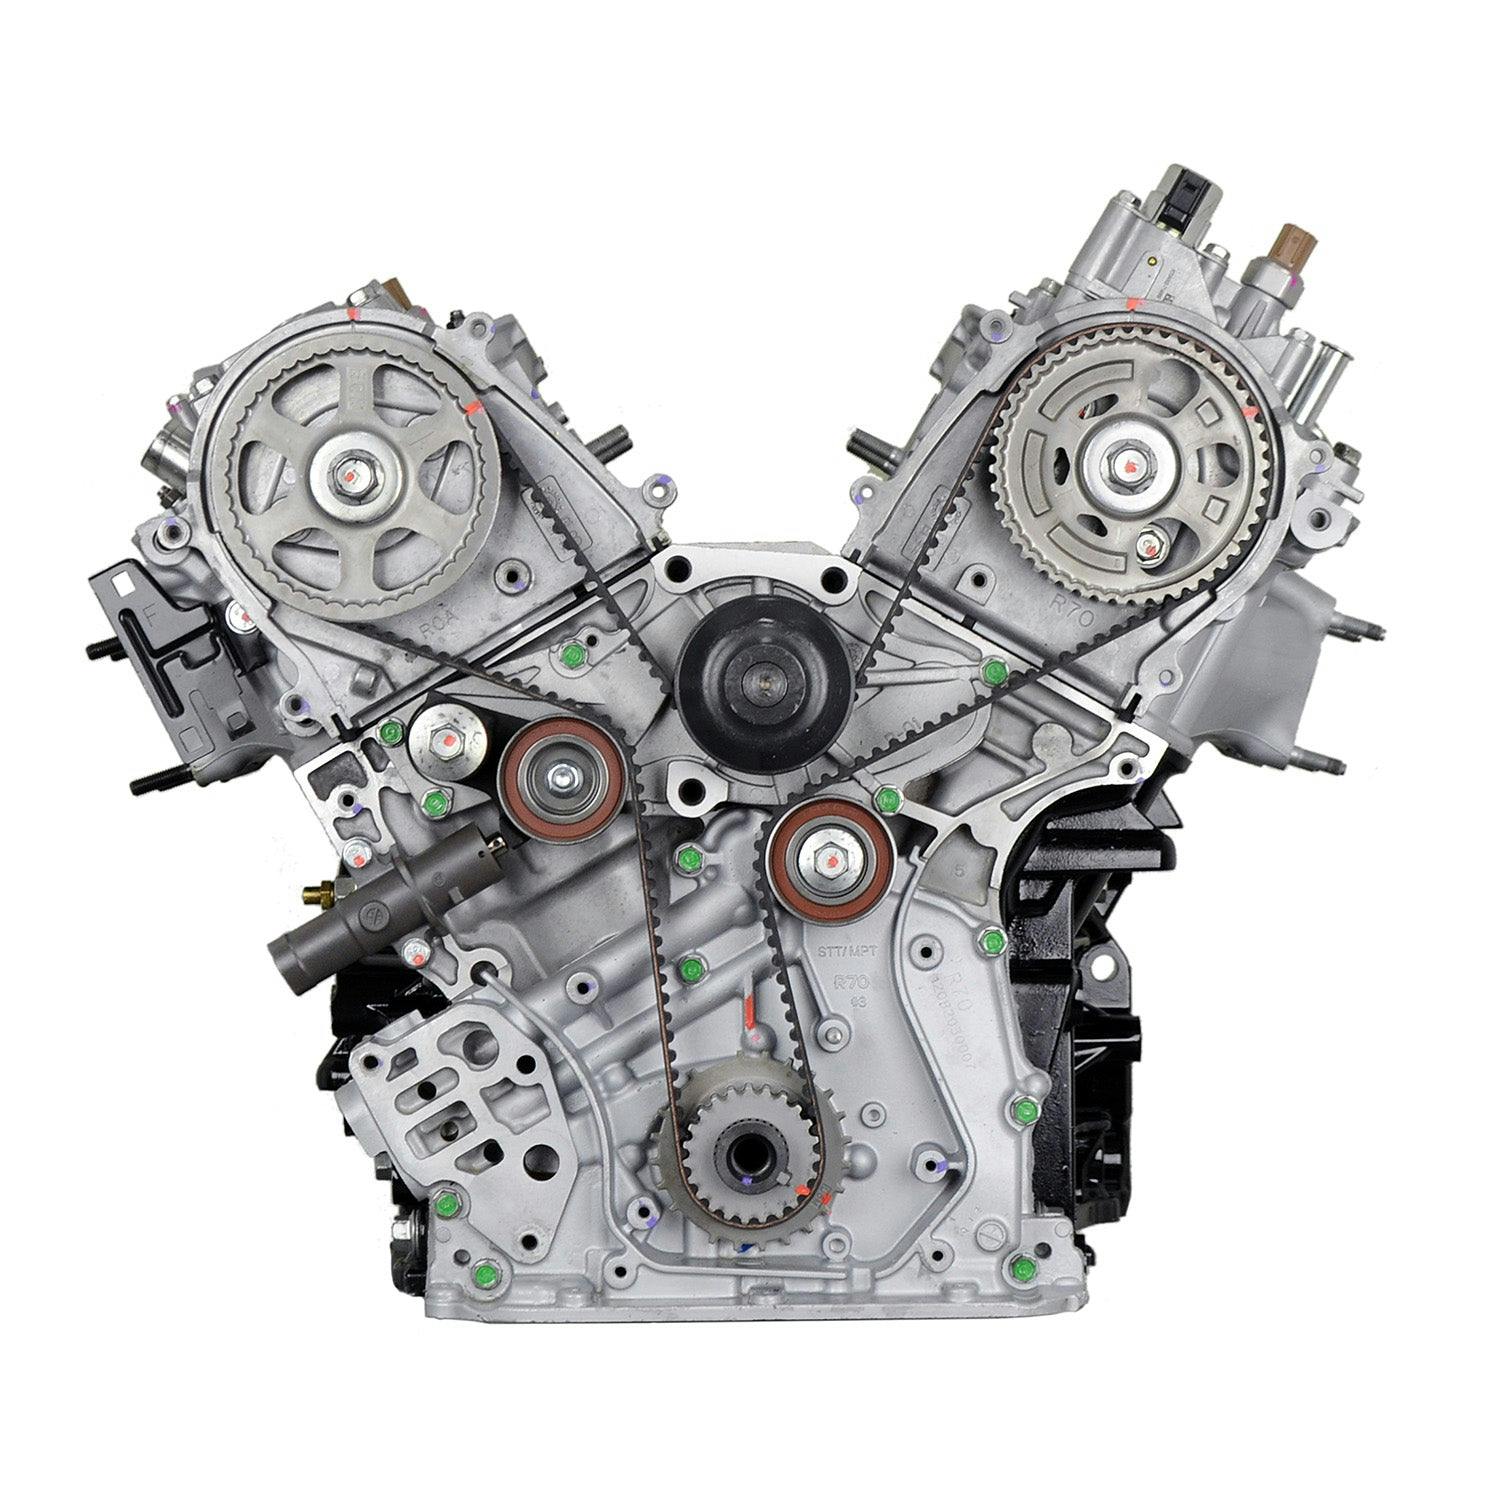 3.5L V6 Engine for 2008-2015 Acura RDX/Honda Accord, Accord Crosstour, Crosstour